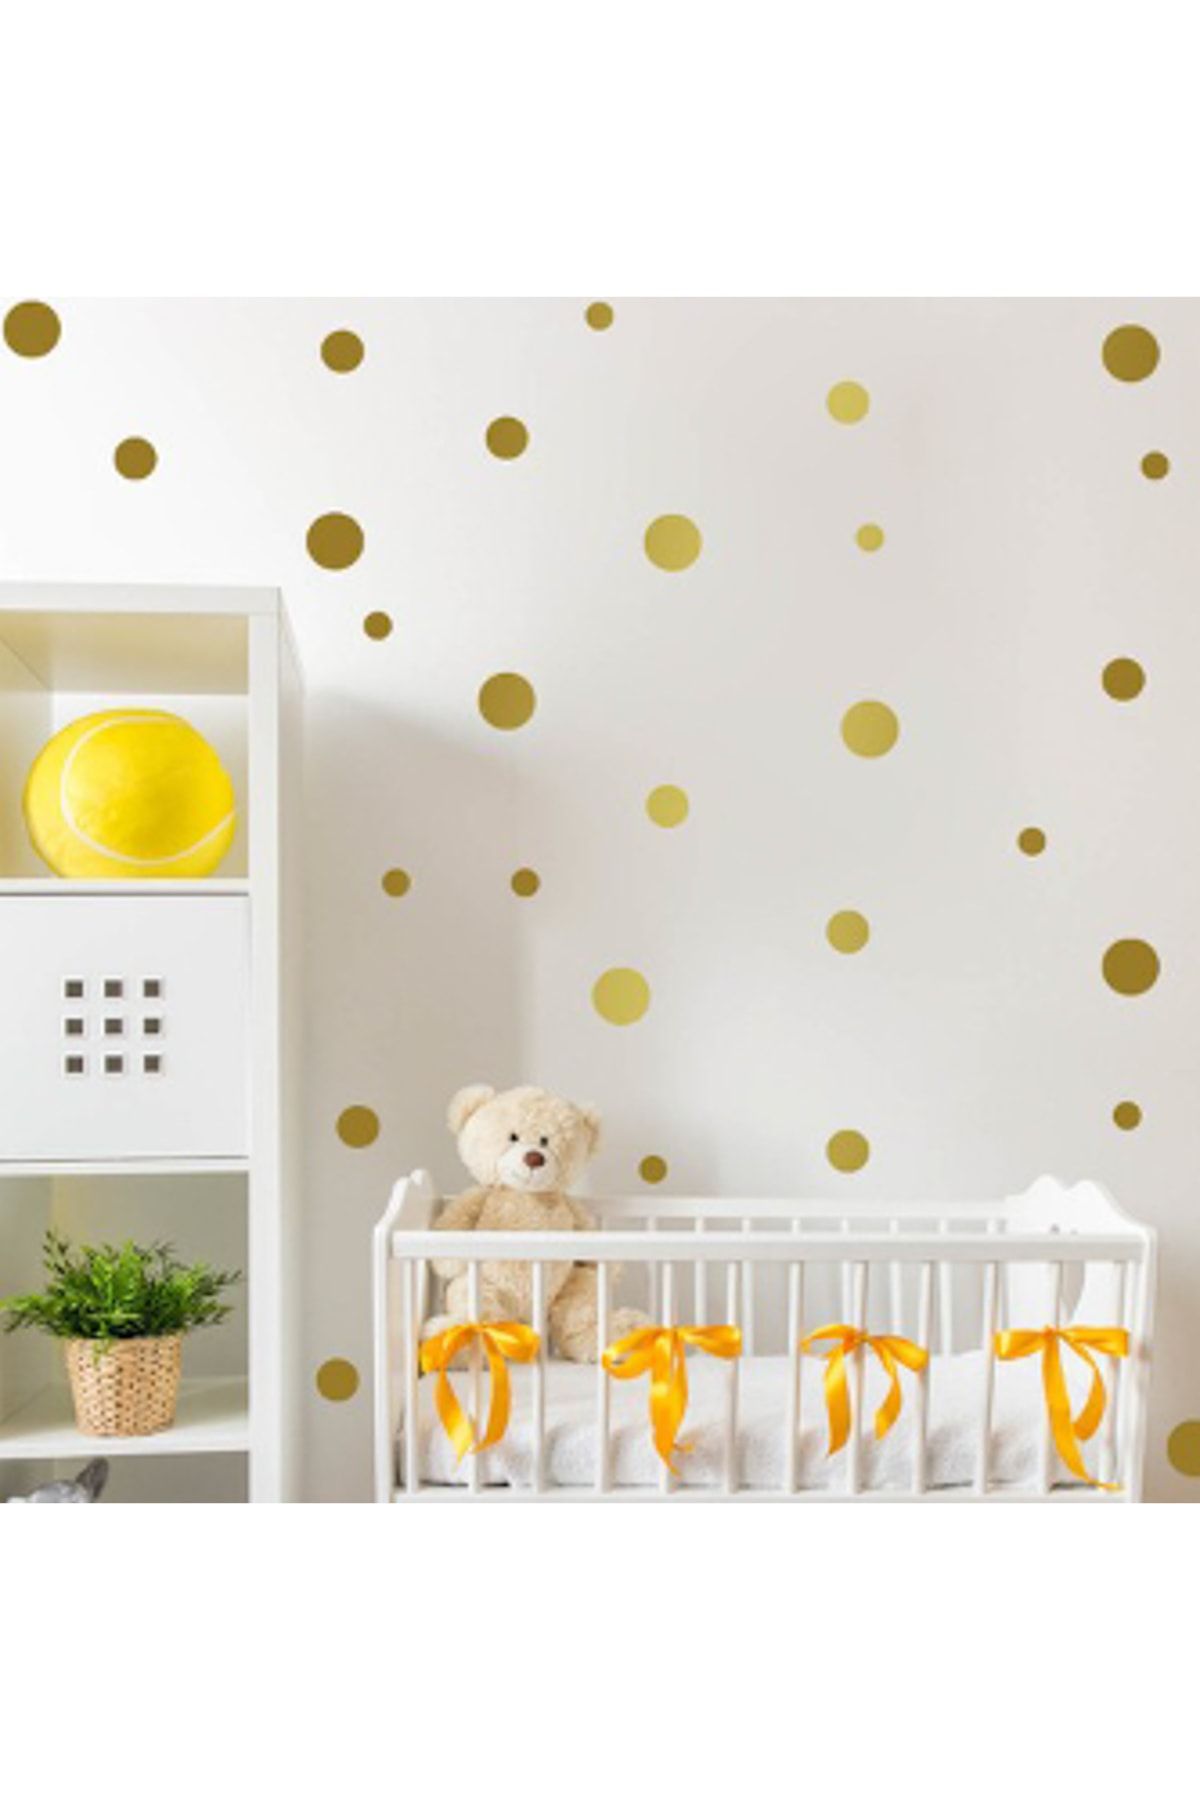 Sticker Sepetim 108 Adet Altın Renk Puantiyeler Bebek Ve Çocuk Odası Dekoratif Duvar Sticker